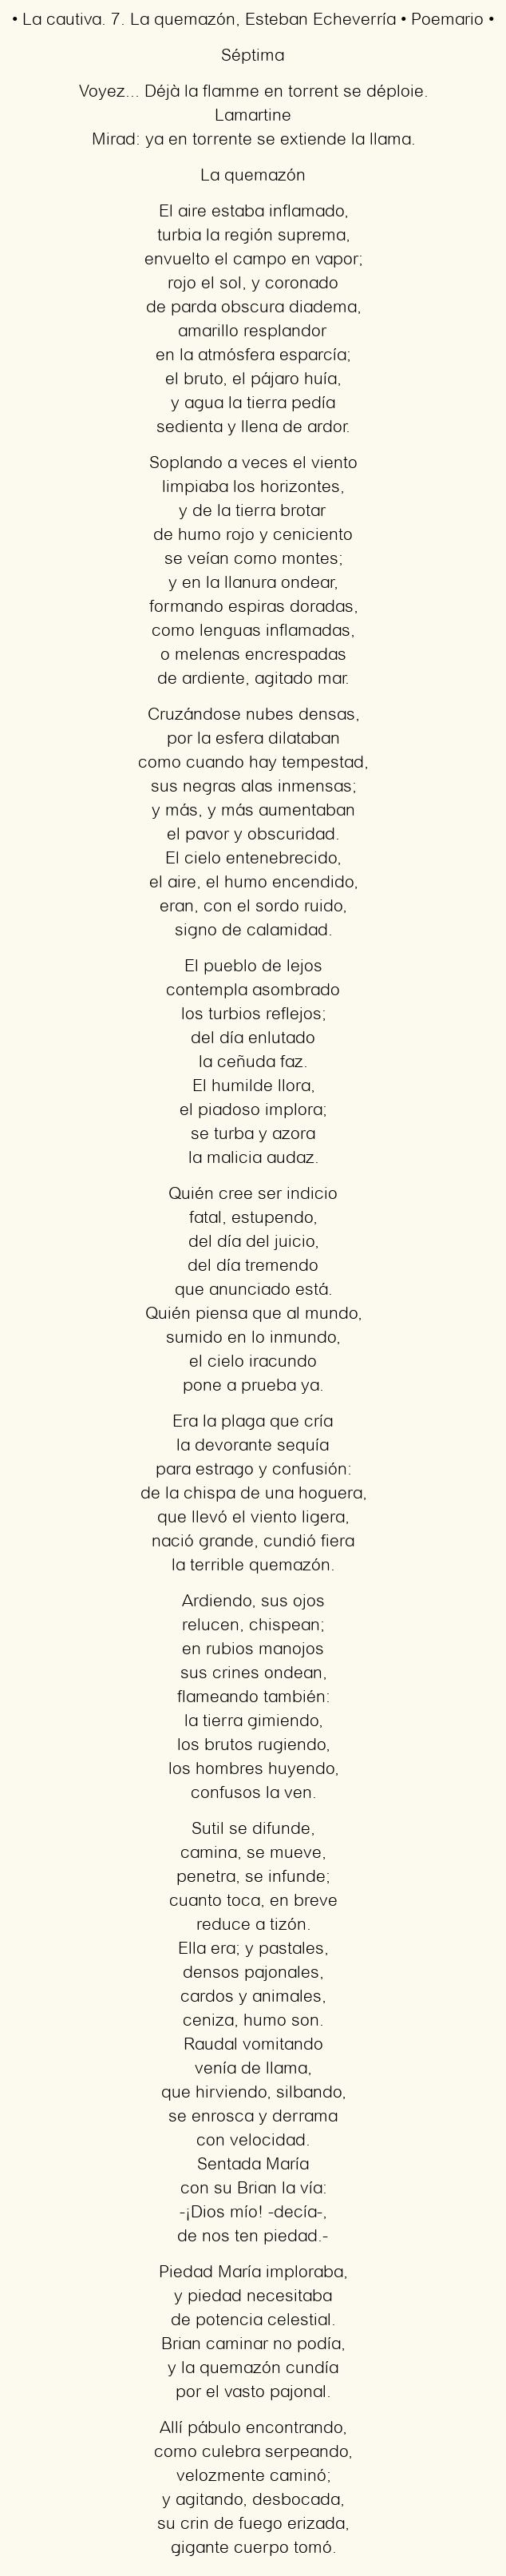 Imagen con el poema La cautiva. 7. La quemazón, por Esteban Echeverría